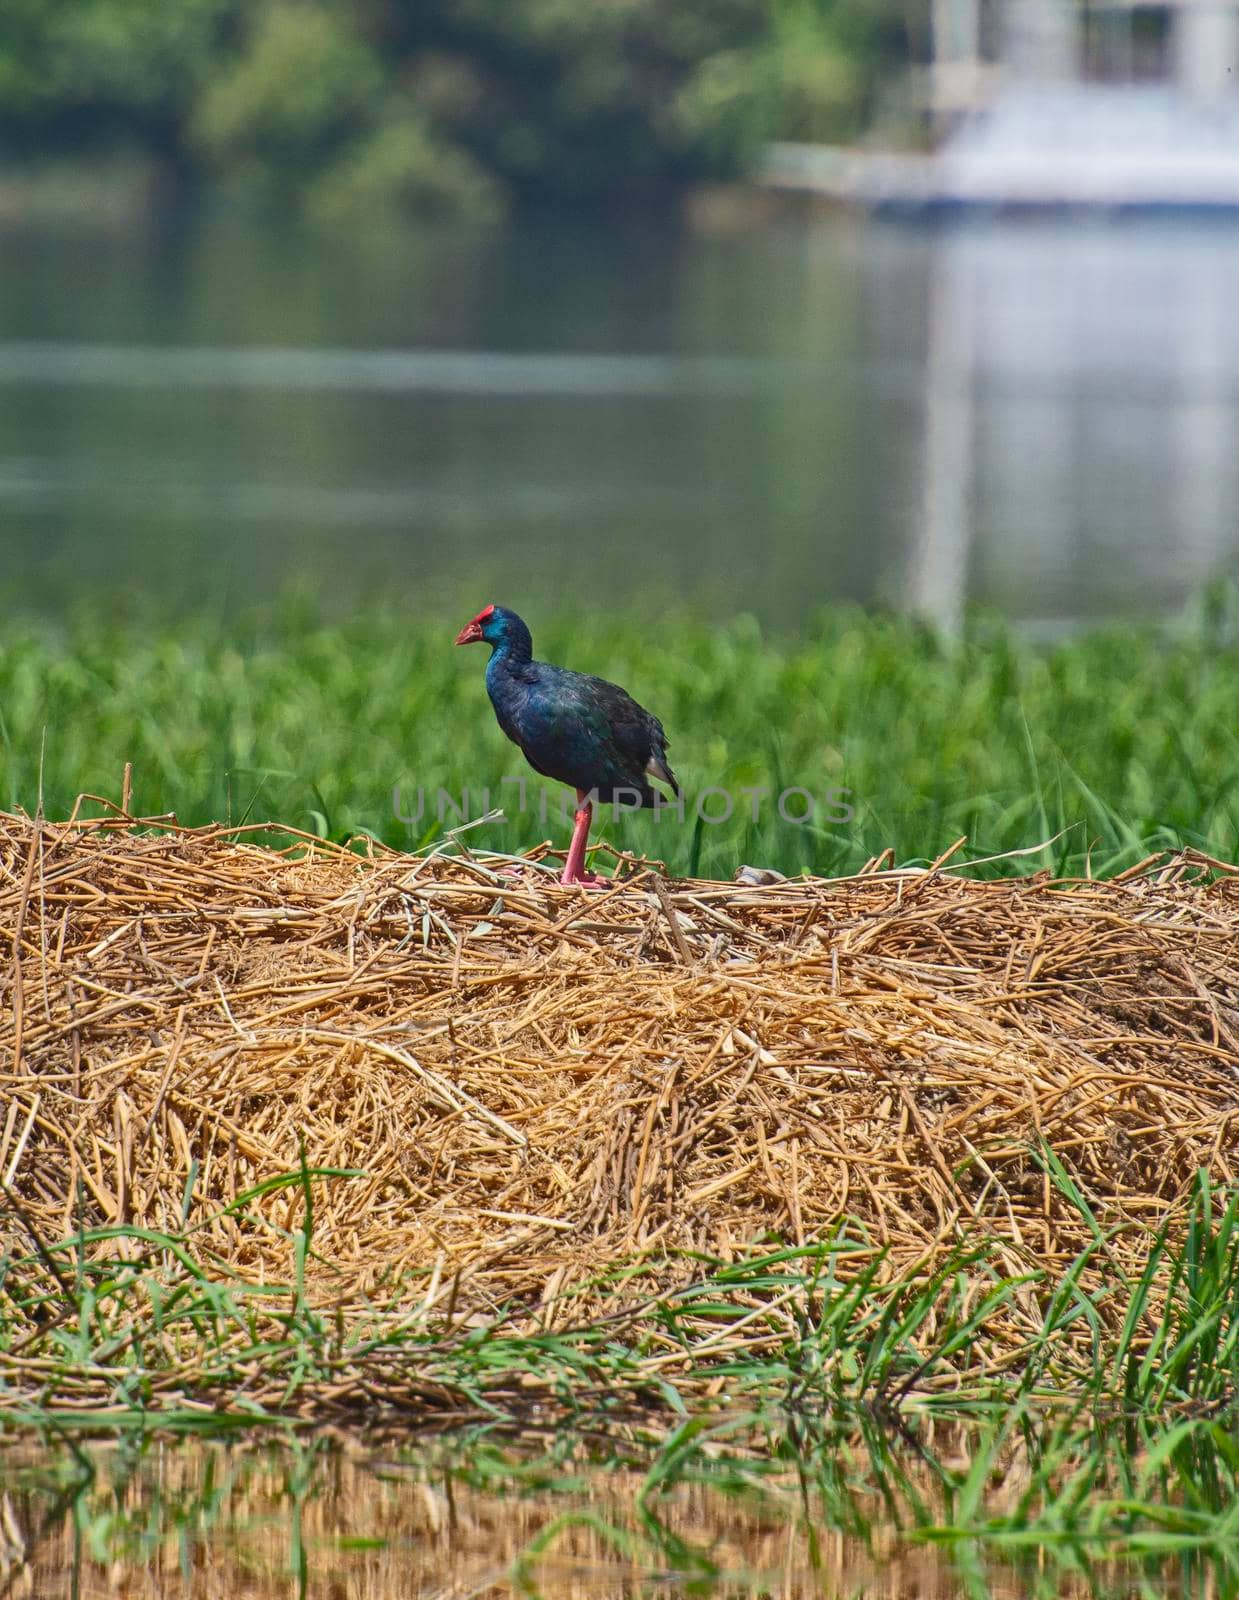 American purple gallinule stood in grass reeds by river bank by paulvinten